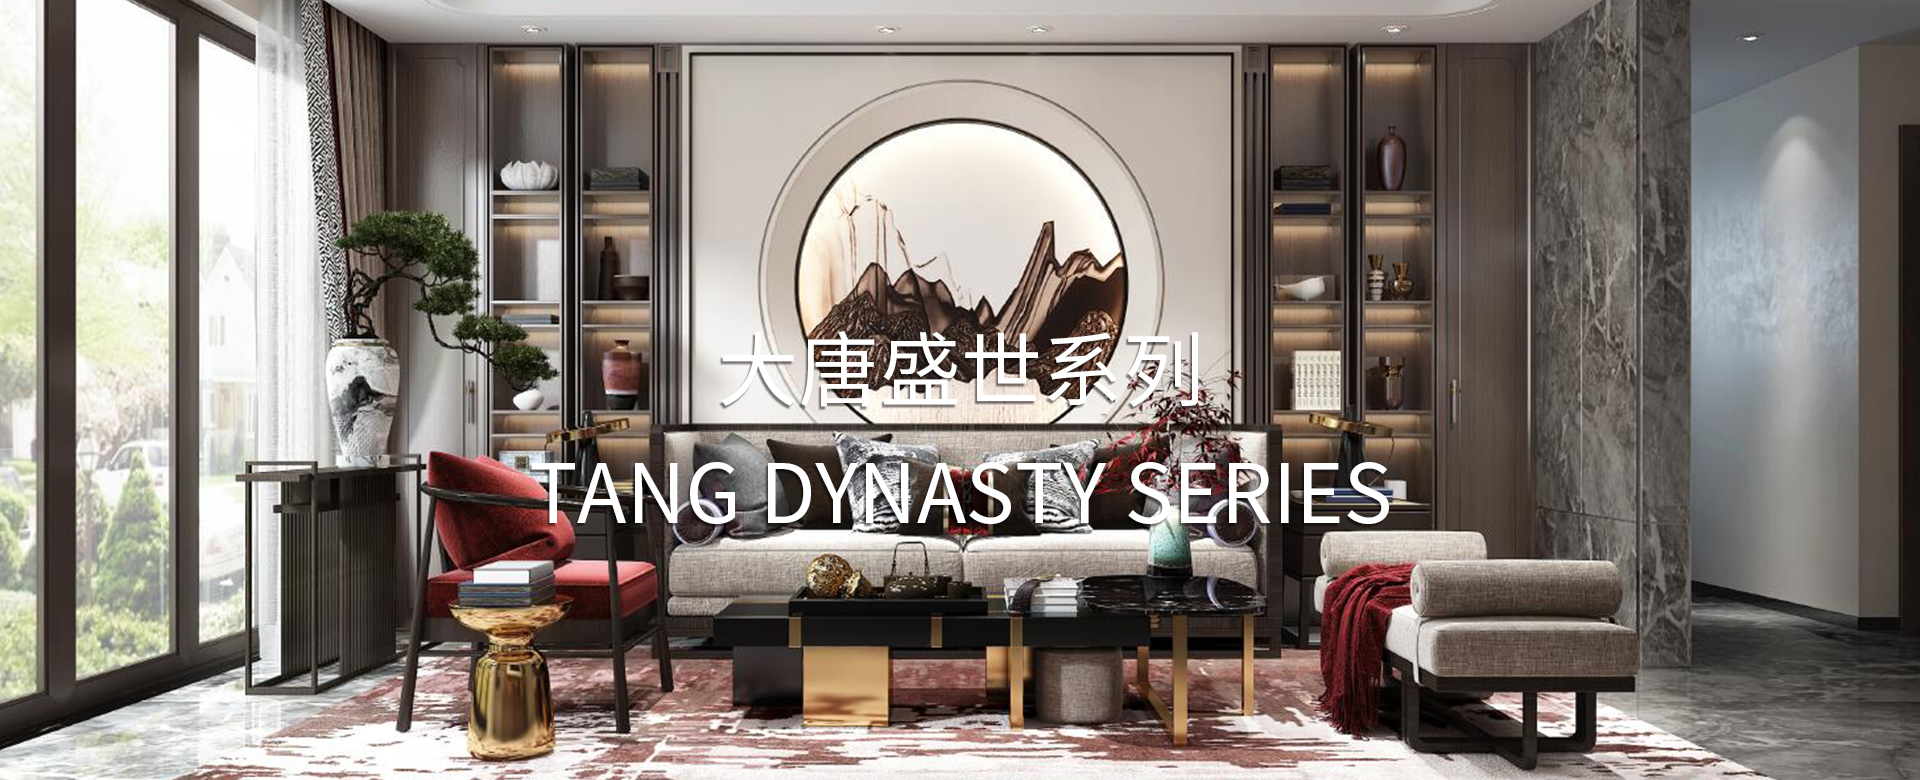 Tang dynasty series